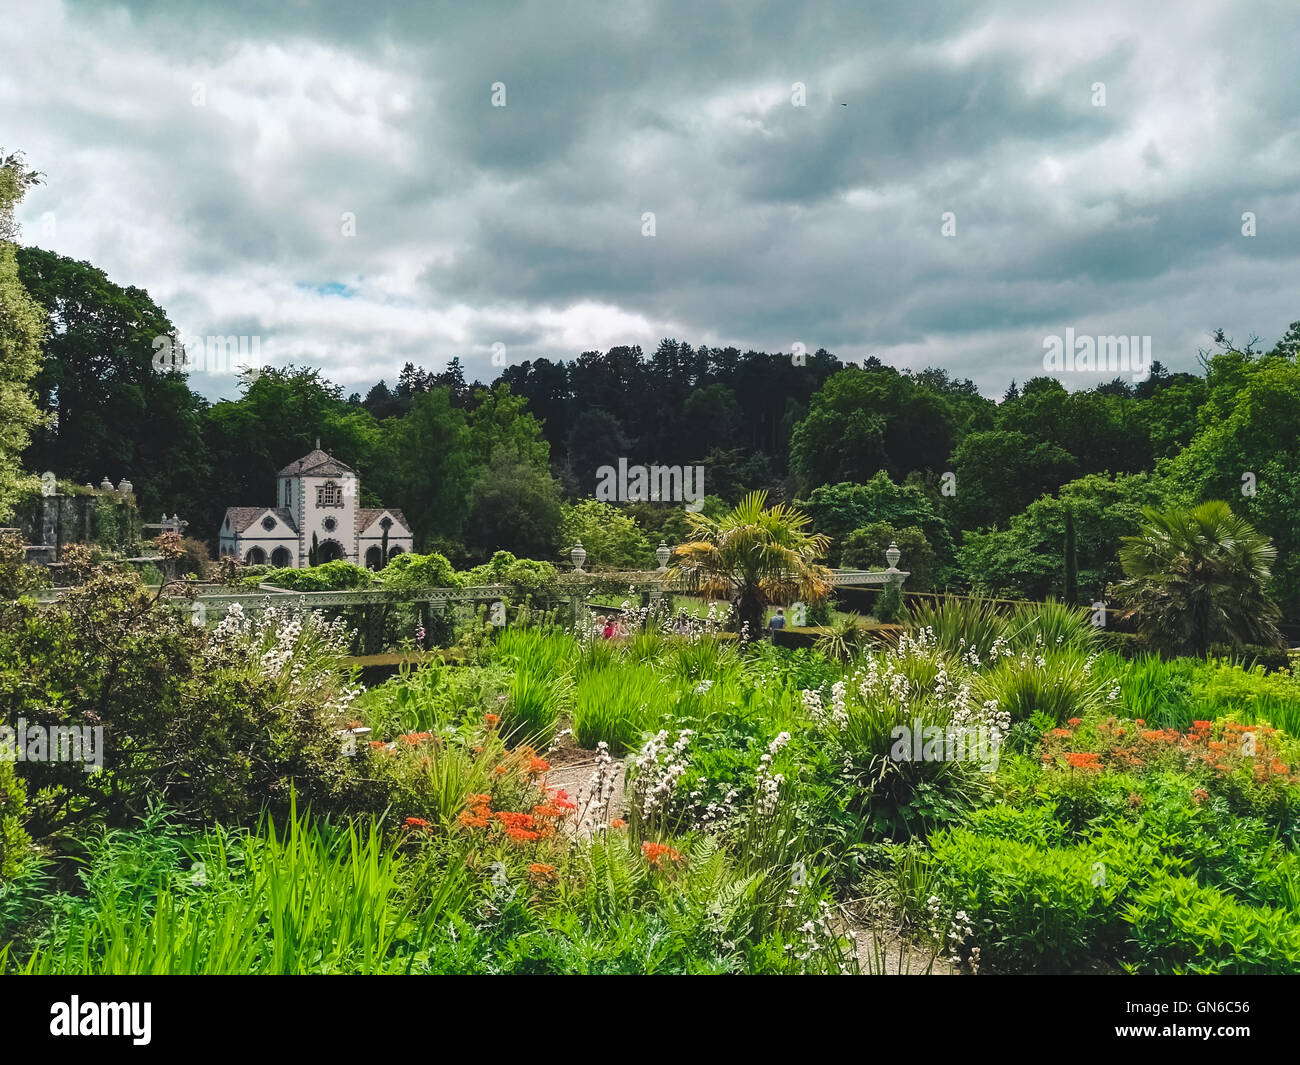 Vue d'un jardin dans le pays de Galles Banque D'Images